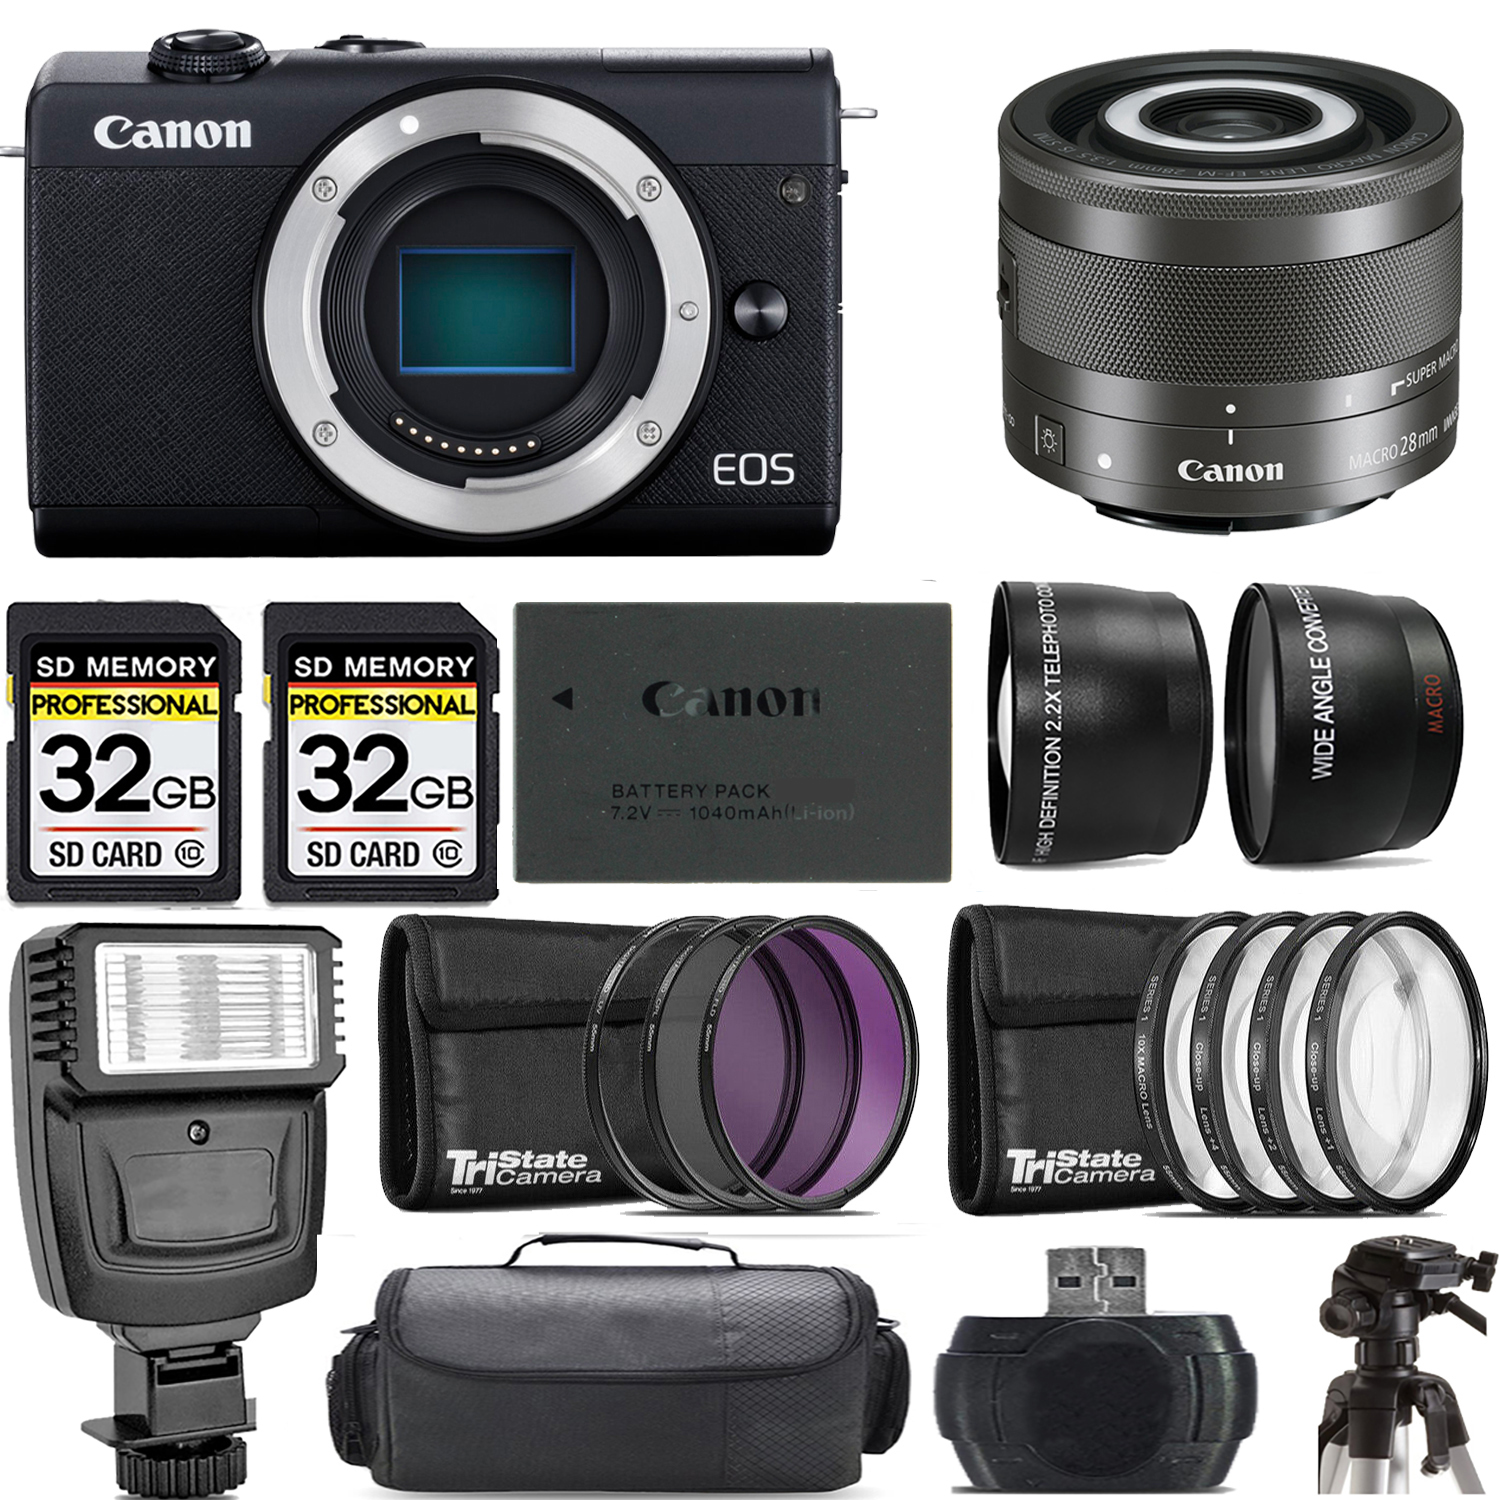 EOS M200  Camera (Black) + 28mm f/3.5 Macro IS STM Lens + Flash - Kit *FREE SHIPPING*